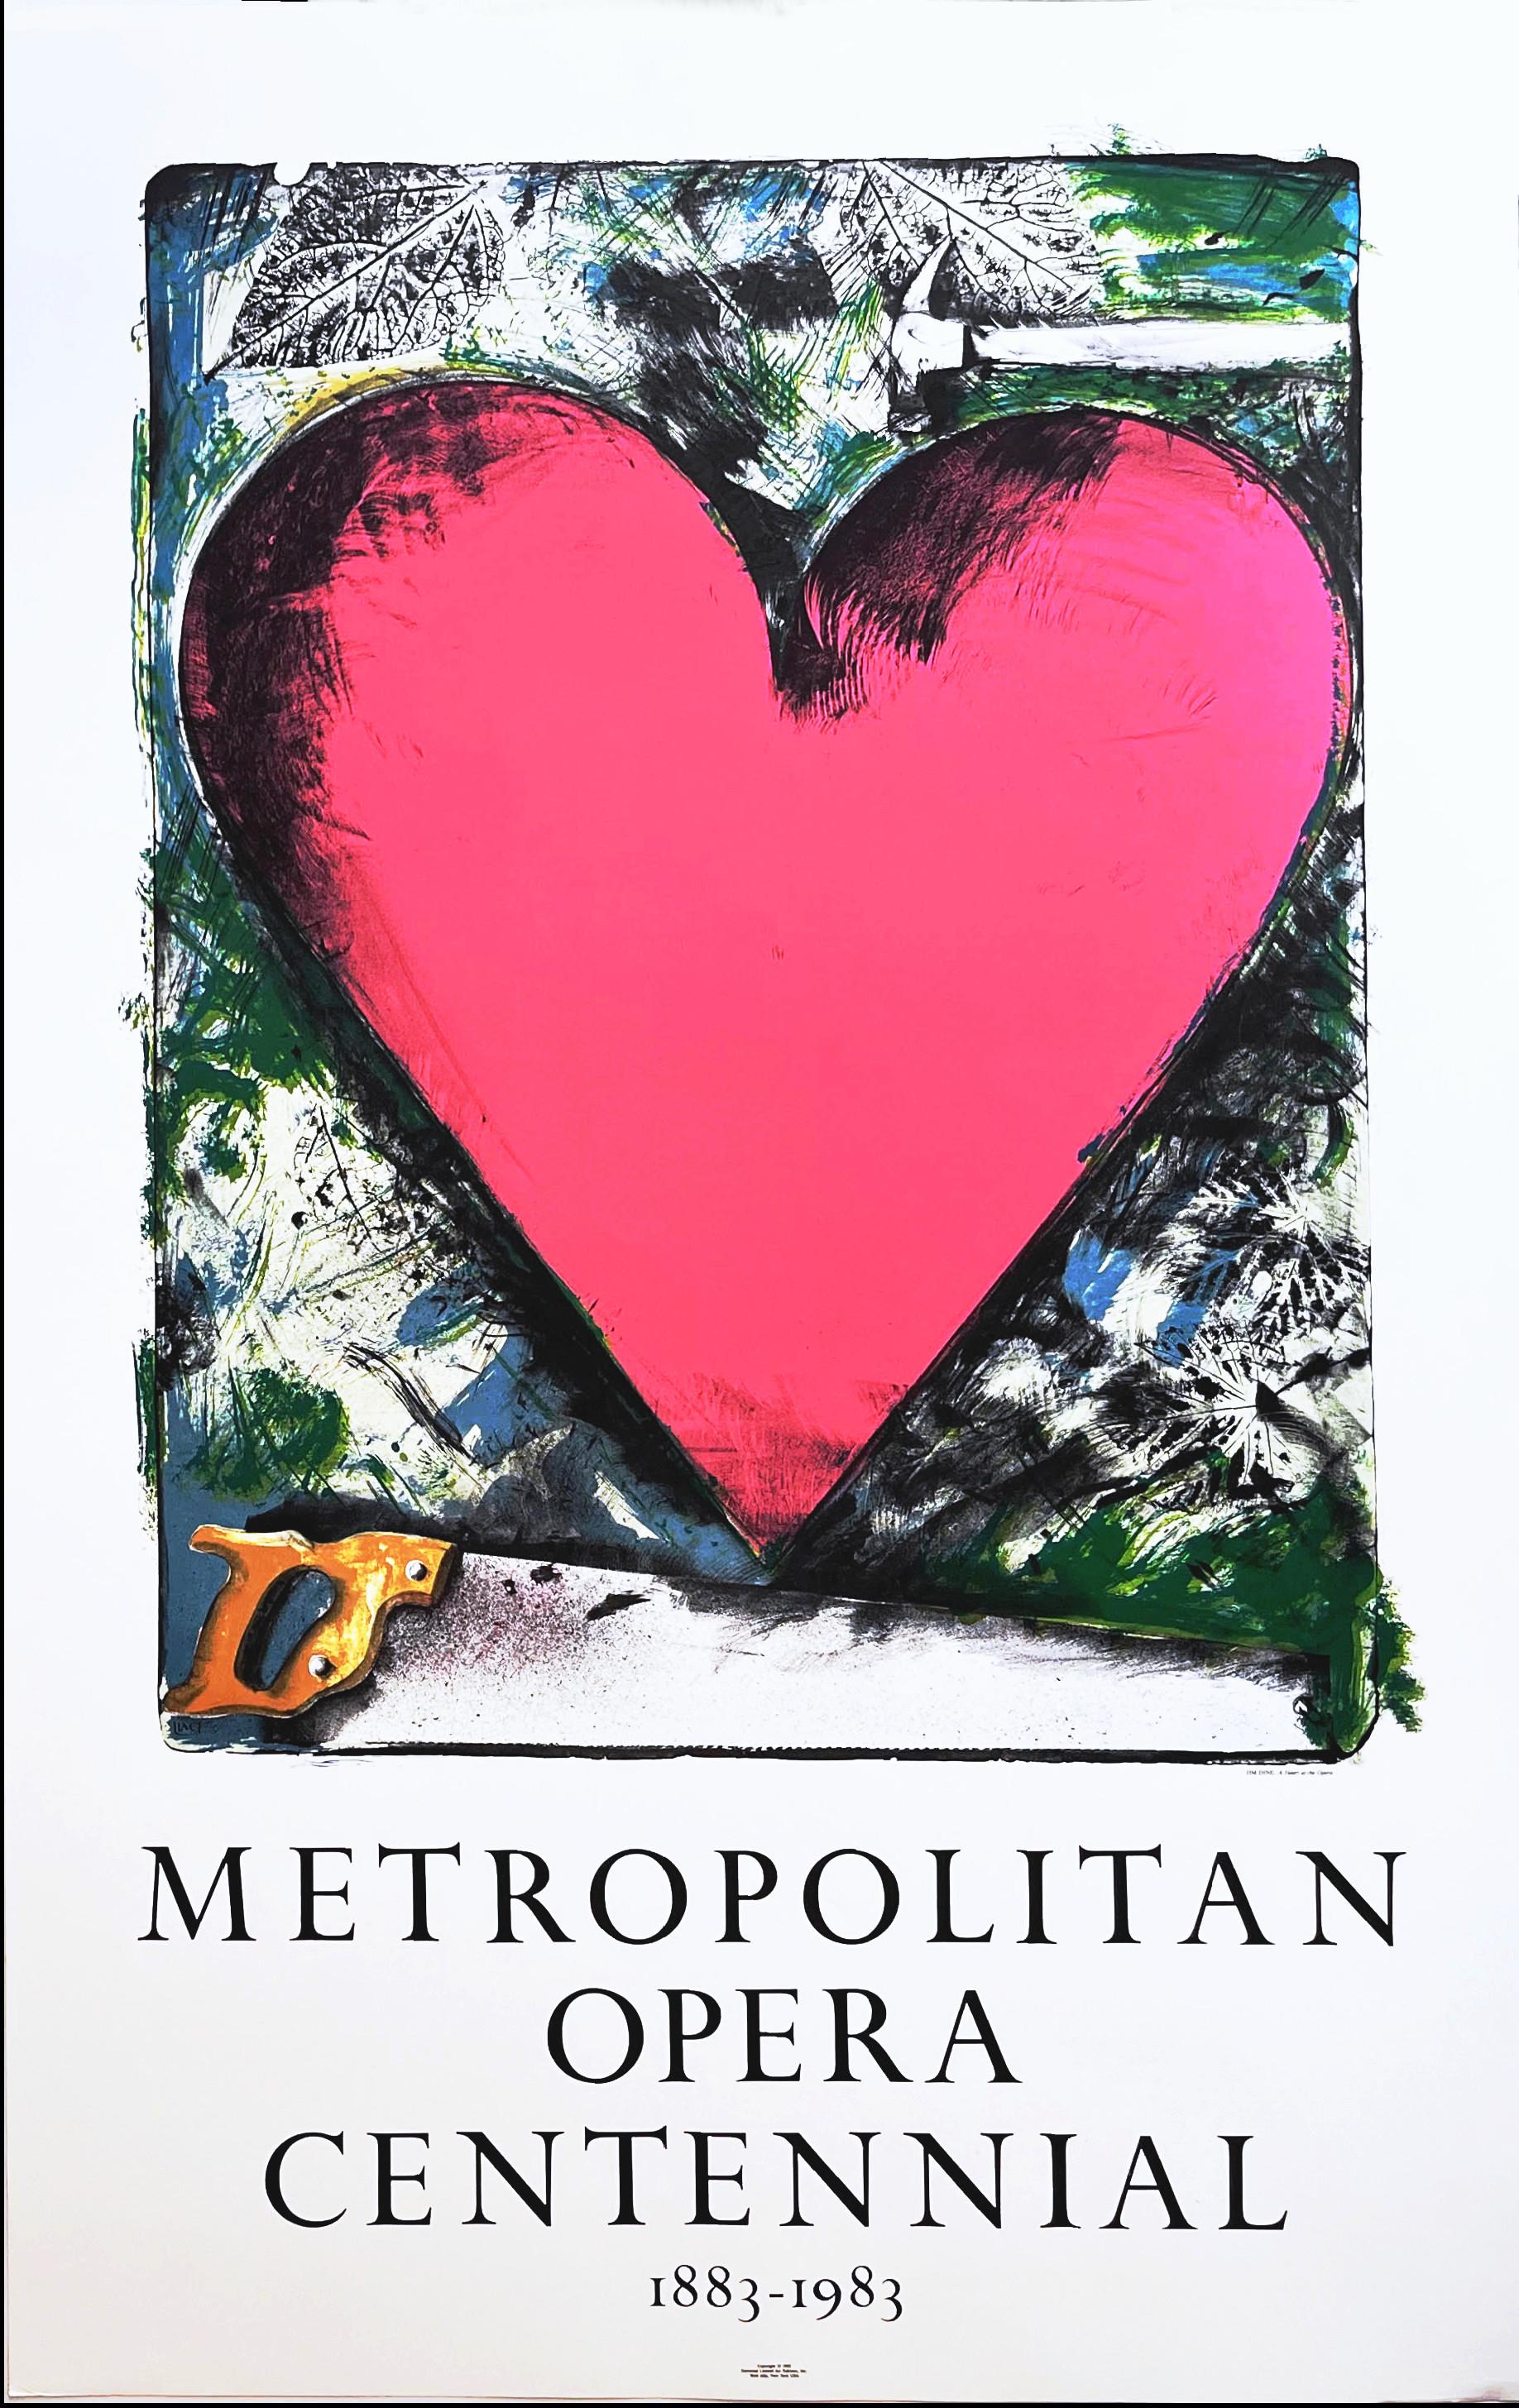 Rosa Herz: Metropolitan Opera Centennial 1883-1983 Lithographie Pop Art Poster, Pop Art